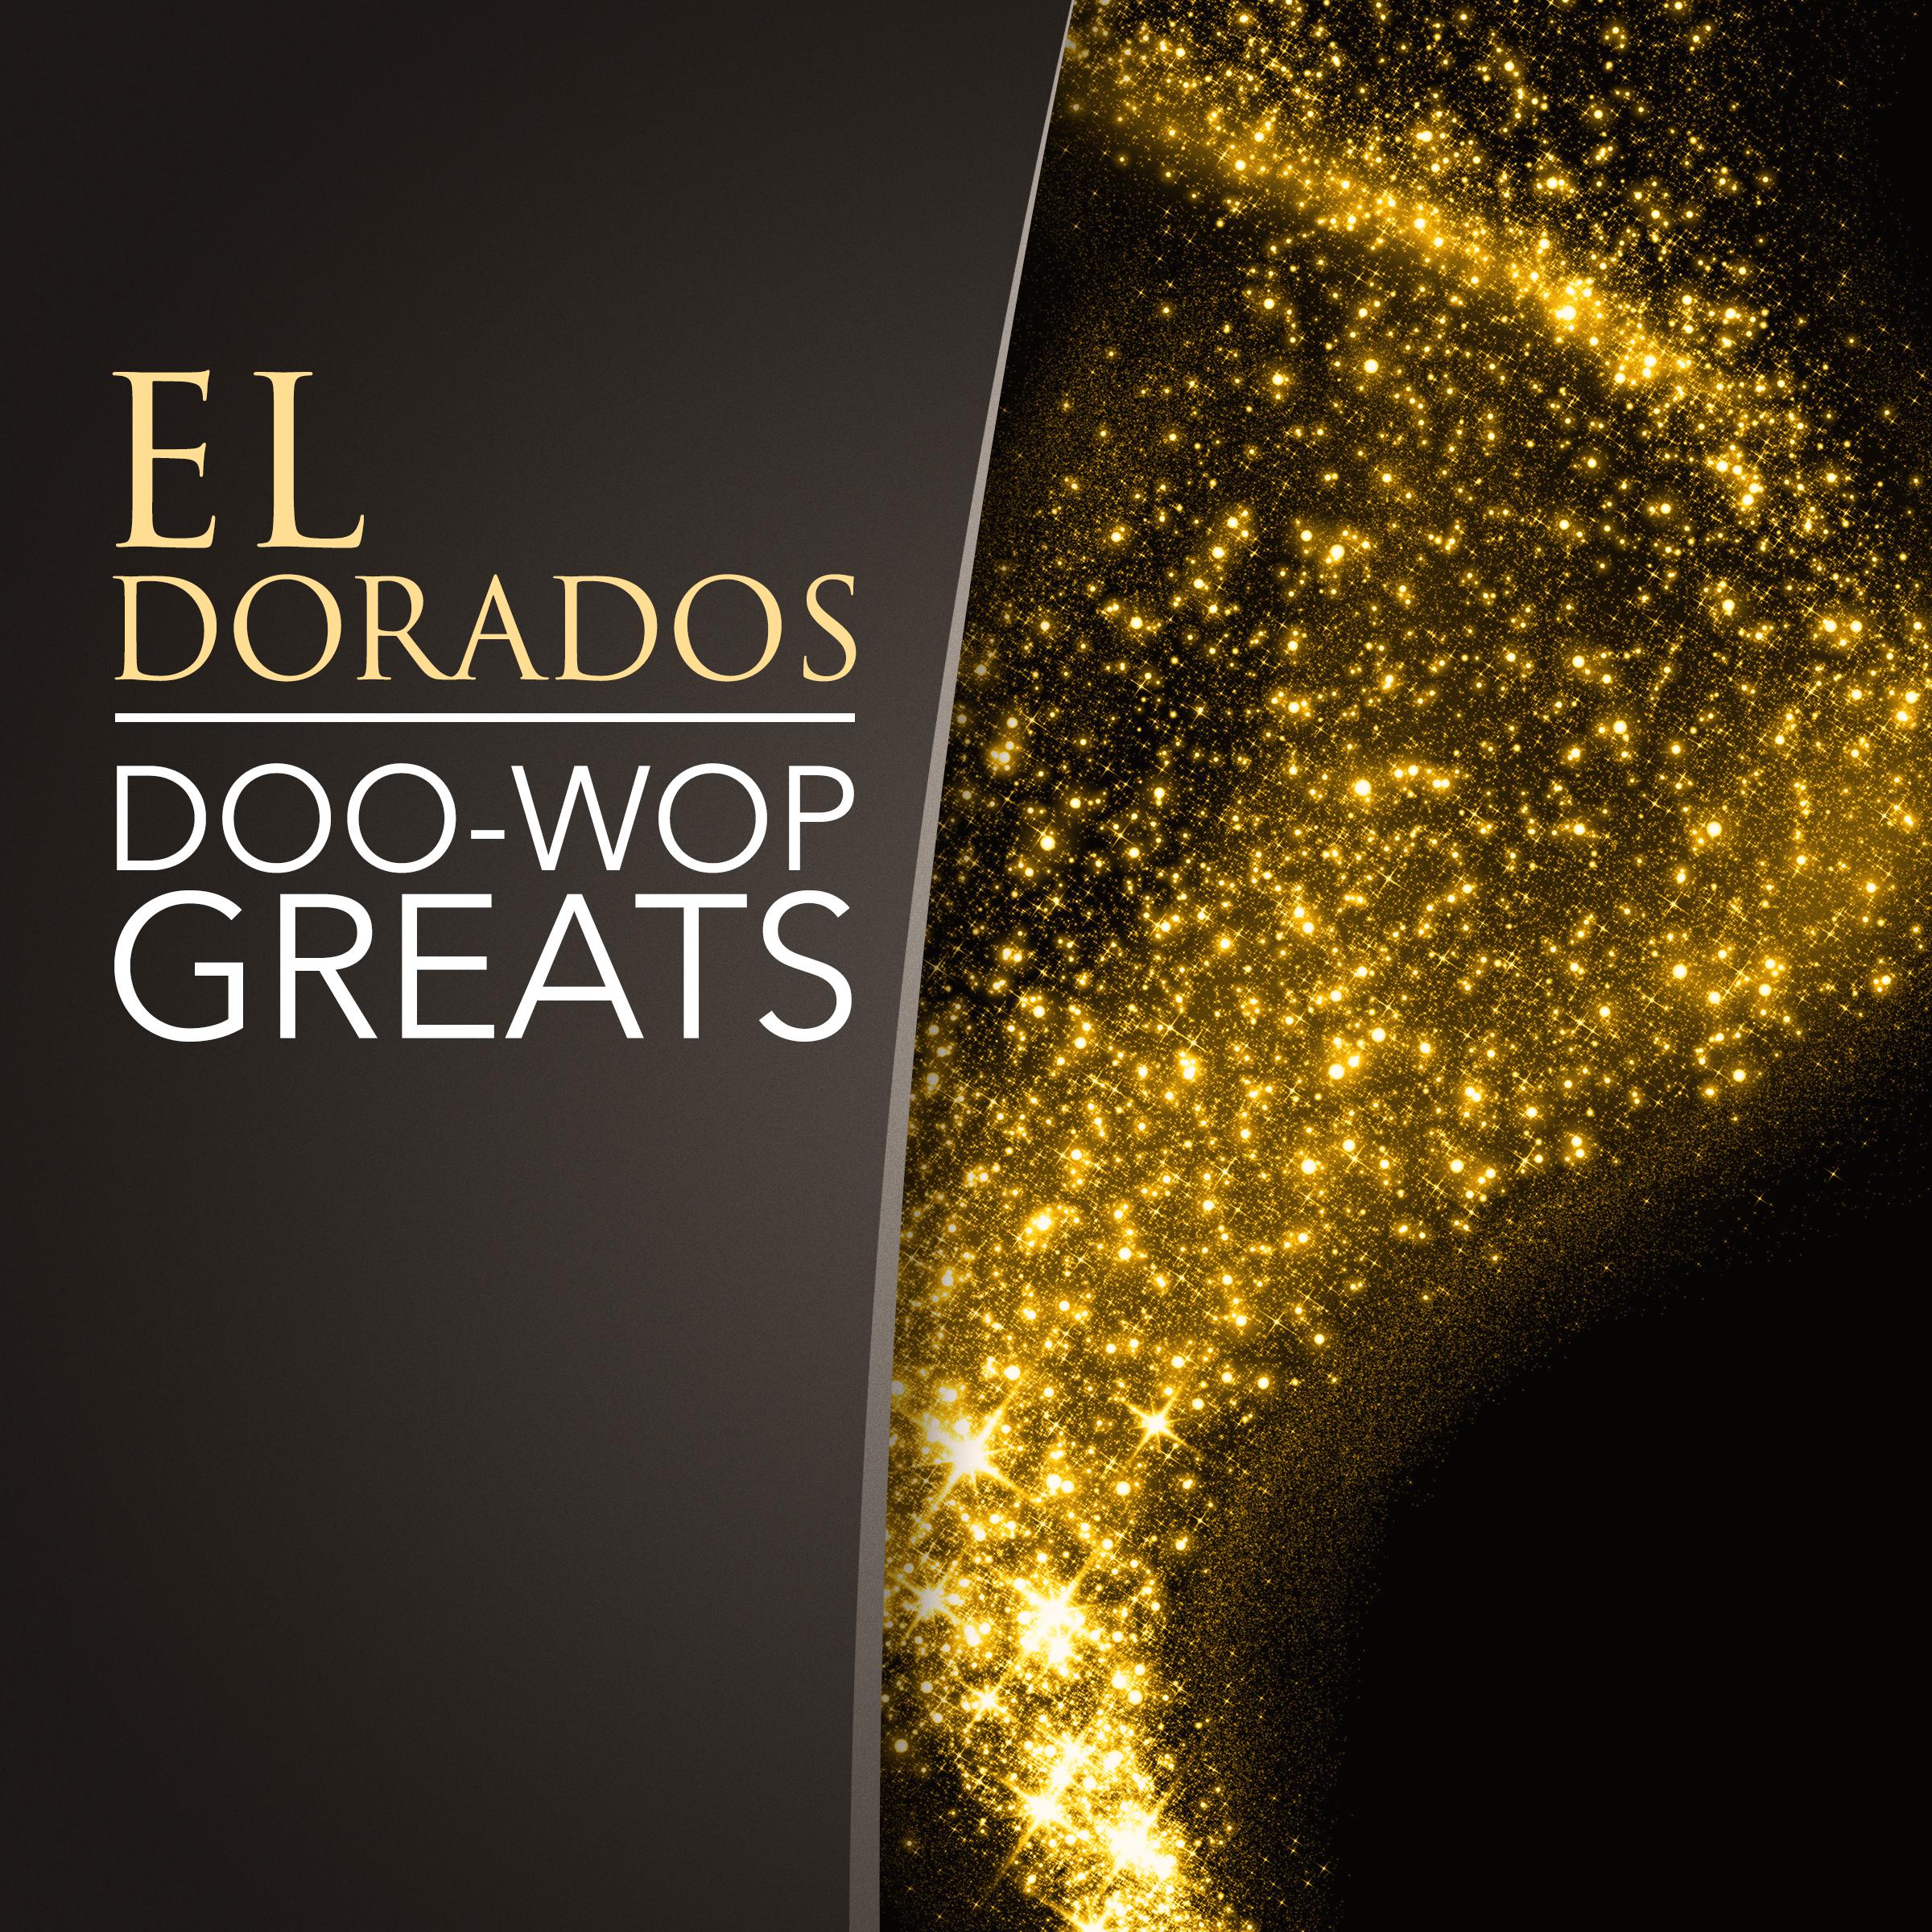 El Dorados - Annie's Answer